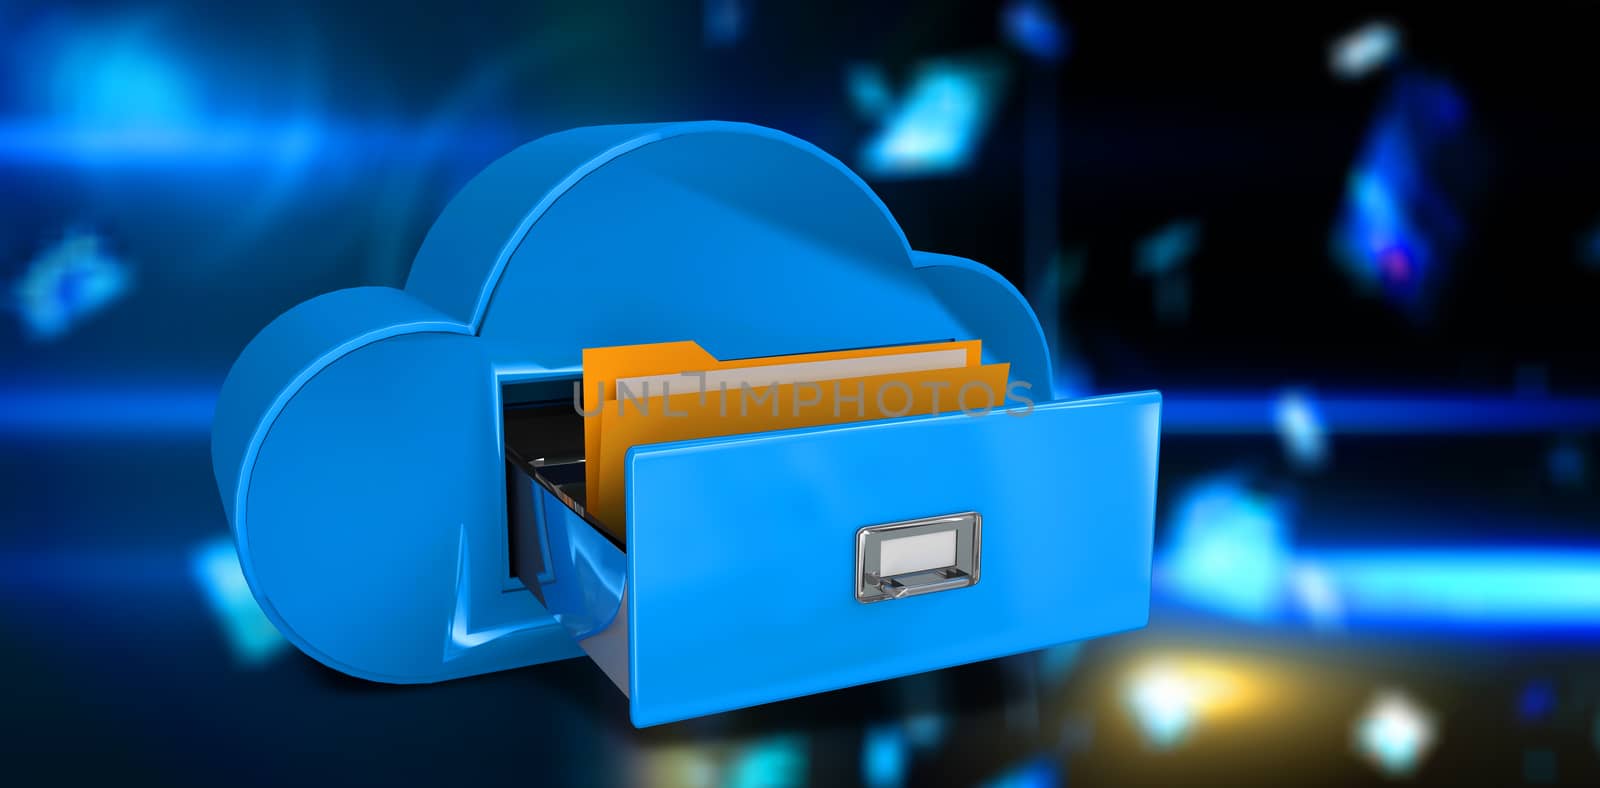 Cloud computing drawer against floating digital screens in blue